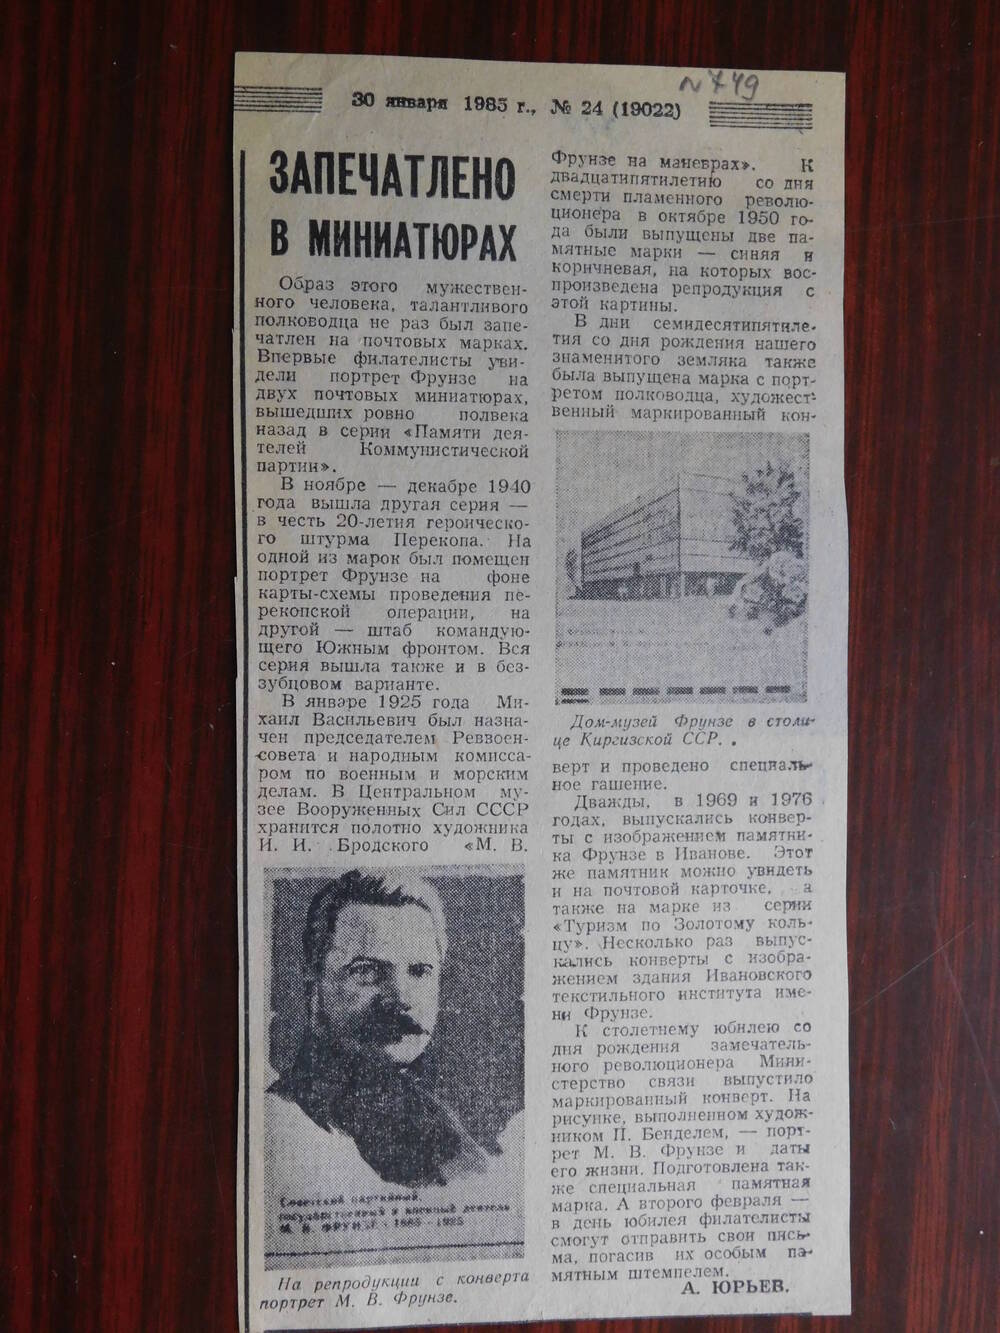 Фрагмент газеты рабочий край № 24 от 30.01.1985 г. Ст. А. Юрьев. Запечатлено в миниатюрах. Иваново.